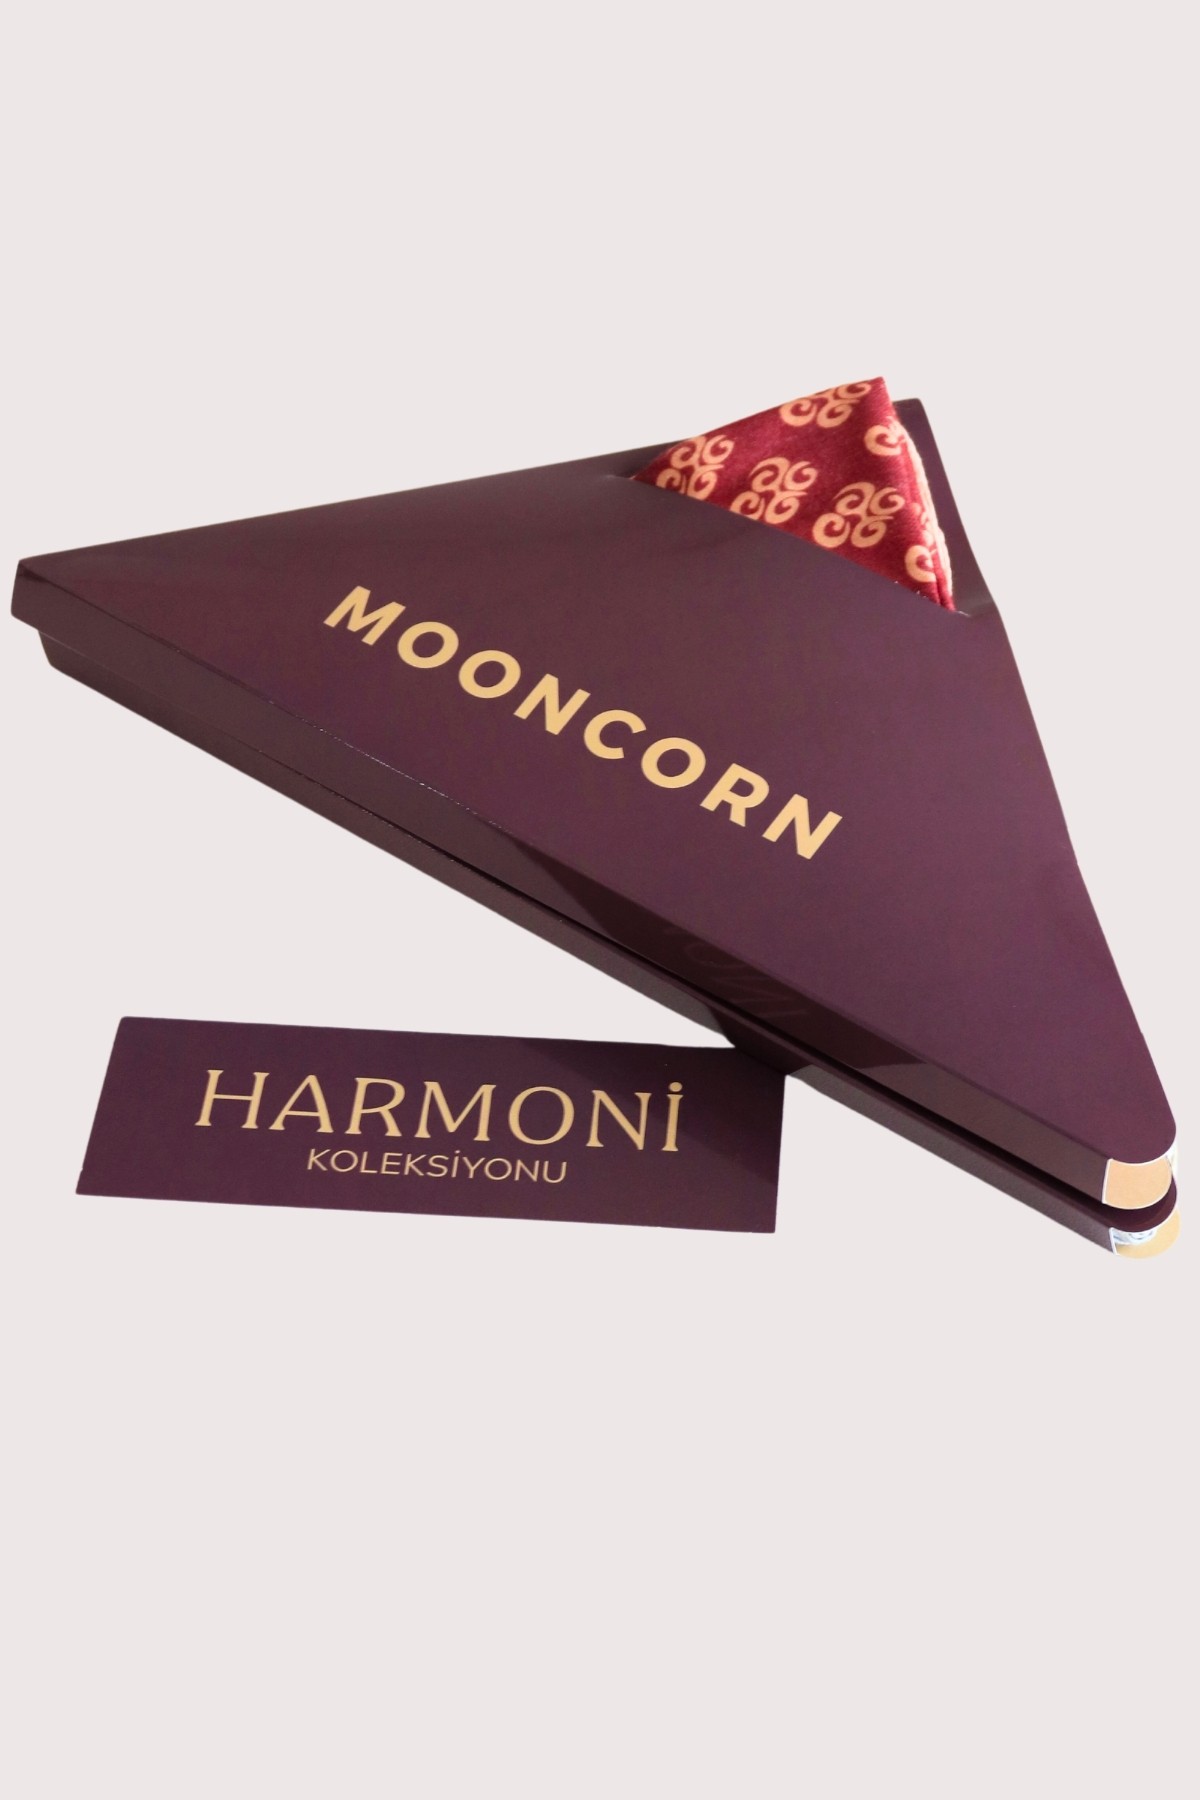 Harmoni Eşarp Koleksiyonu Color Box